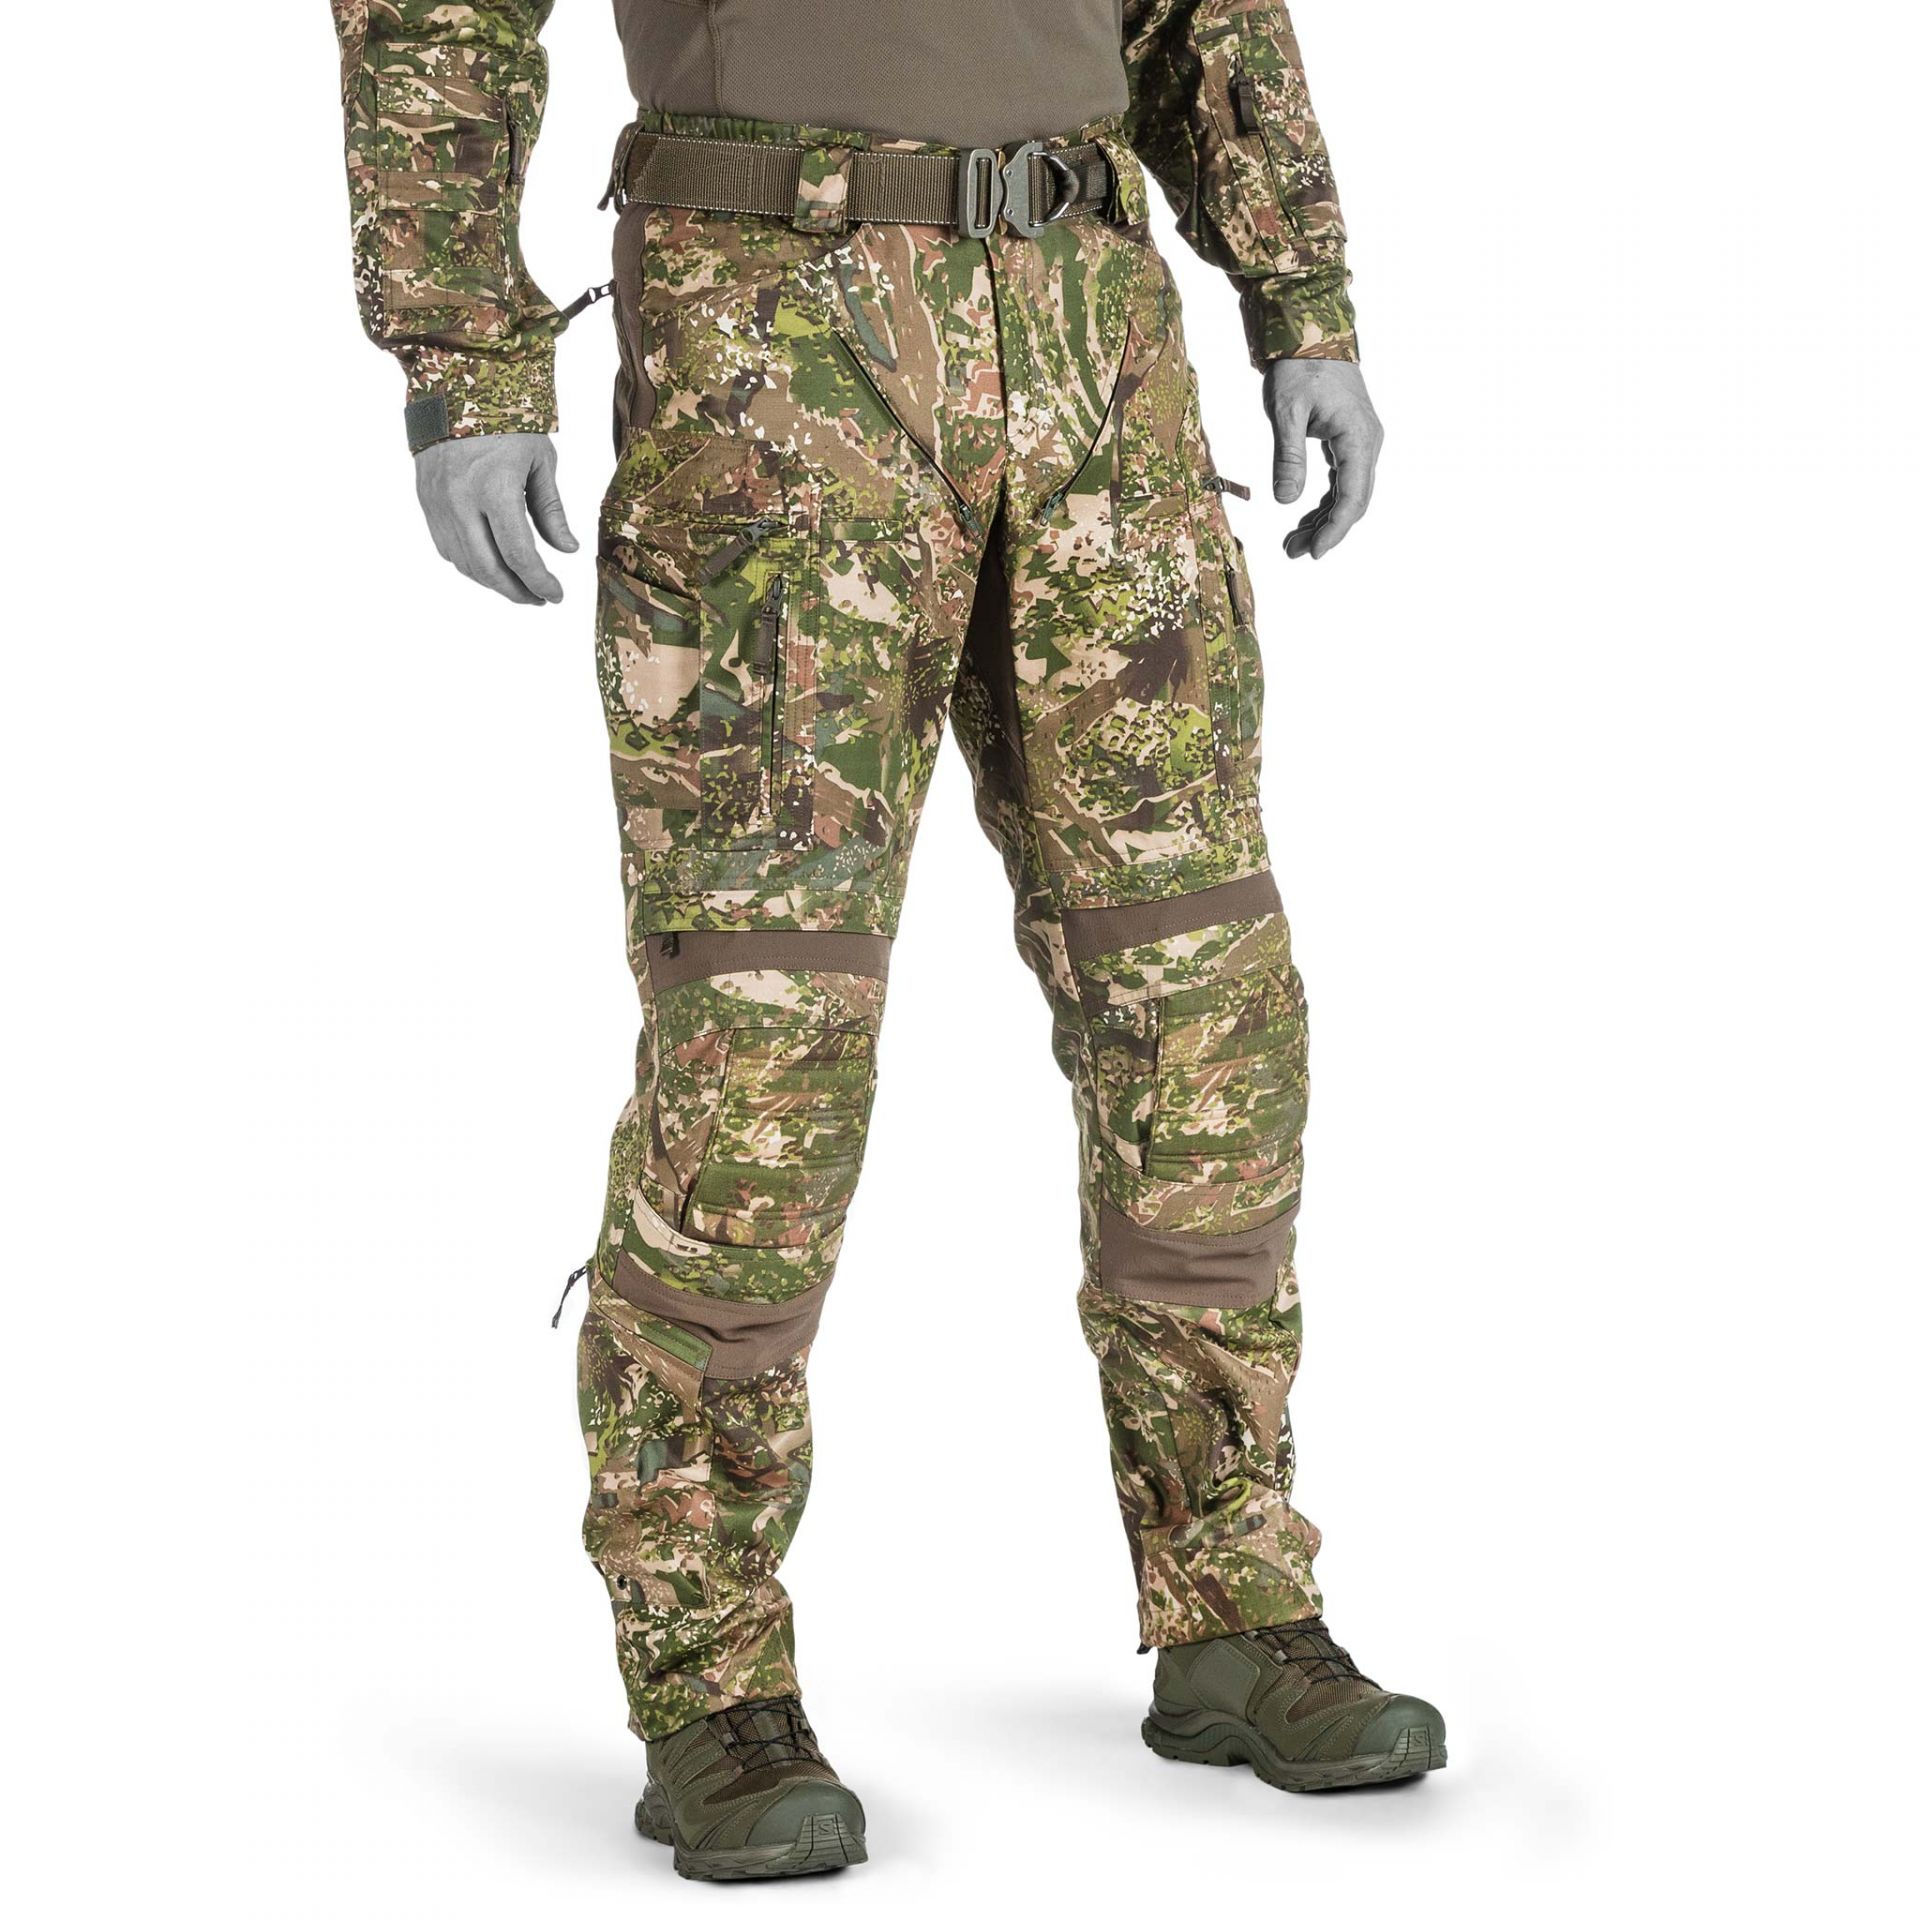 Invader Gear BW Ranger Combat Pants Taktische Einsatz Hose ATP multicam